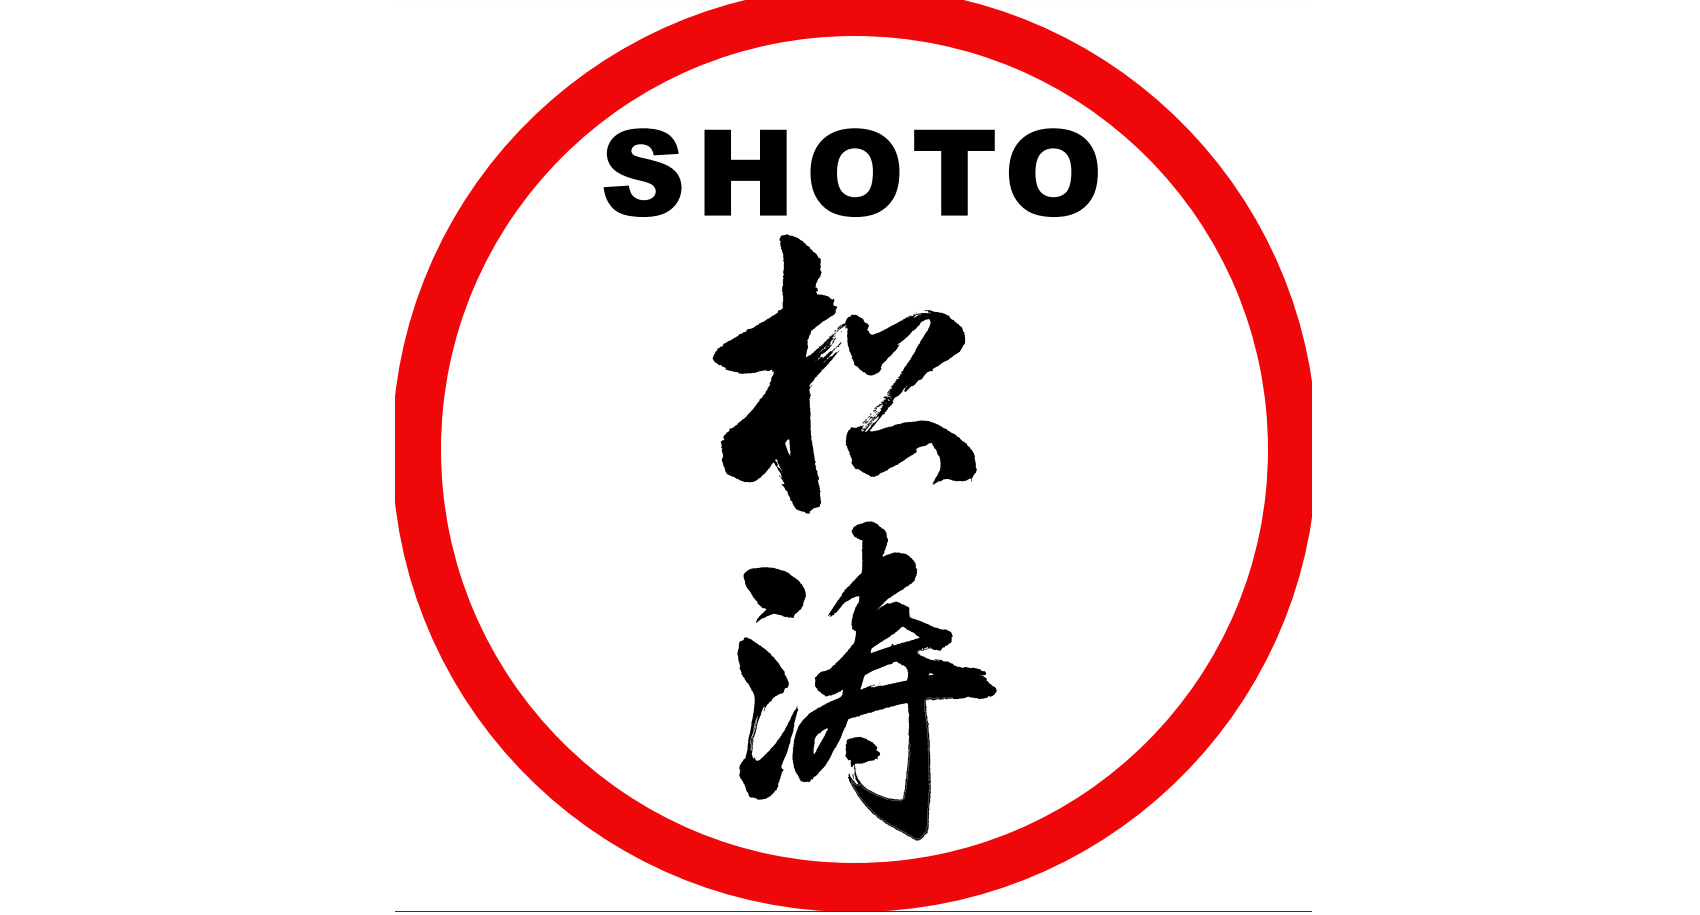 SHOTO Shoto